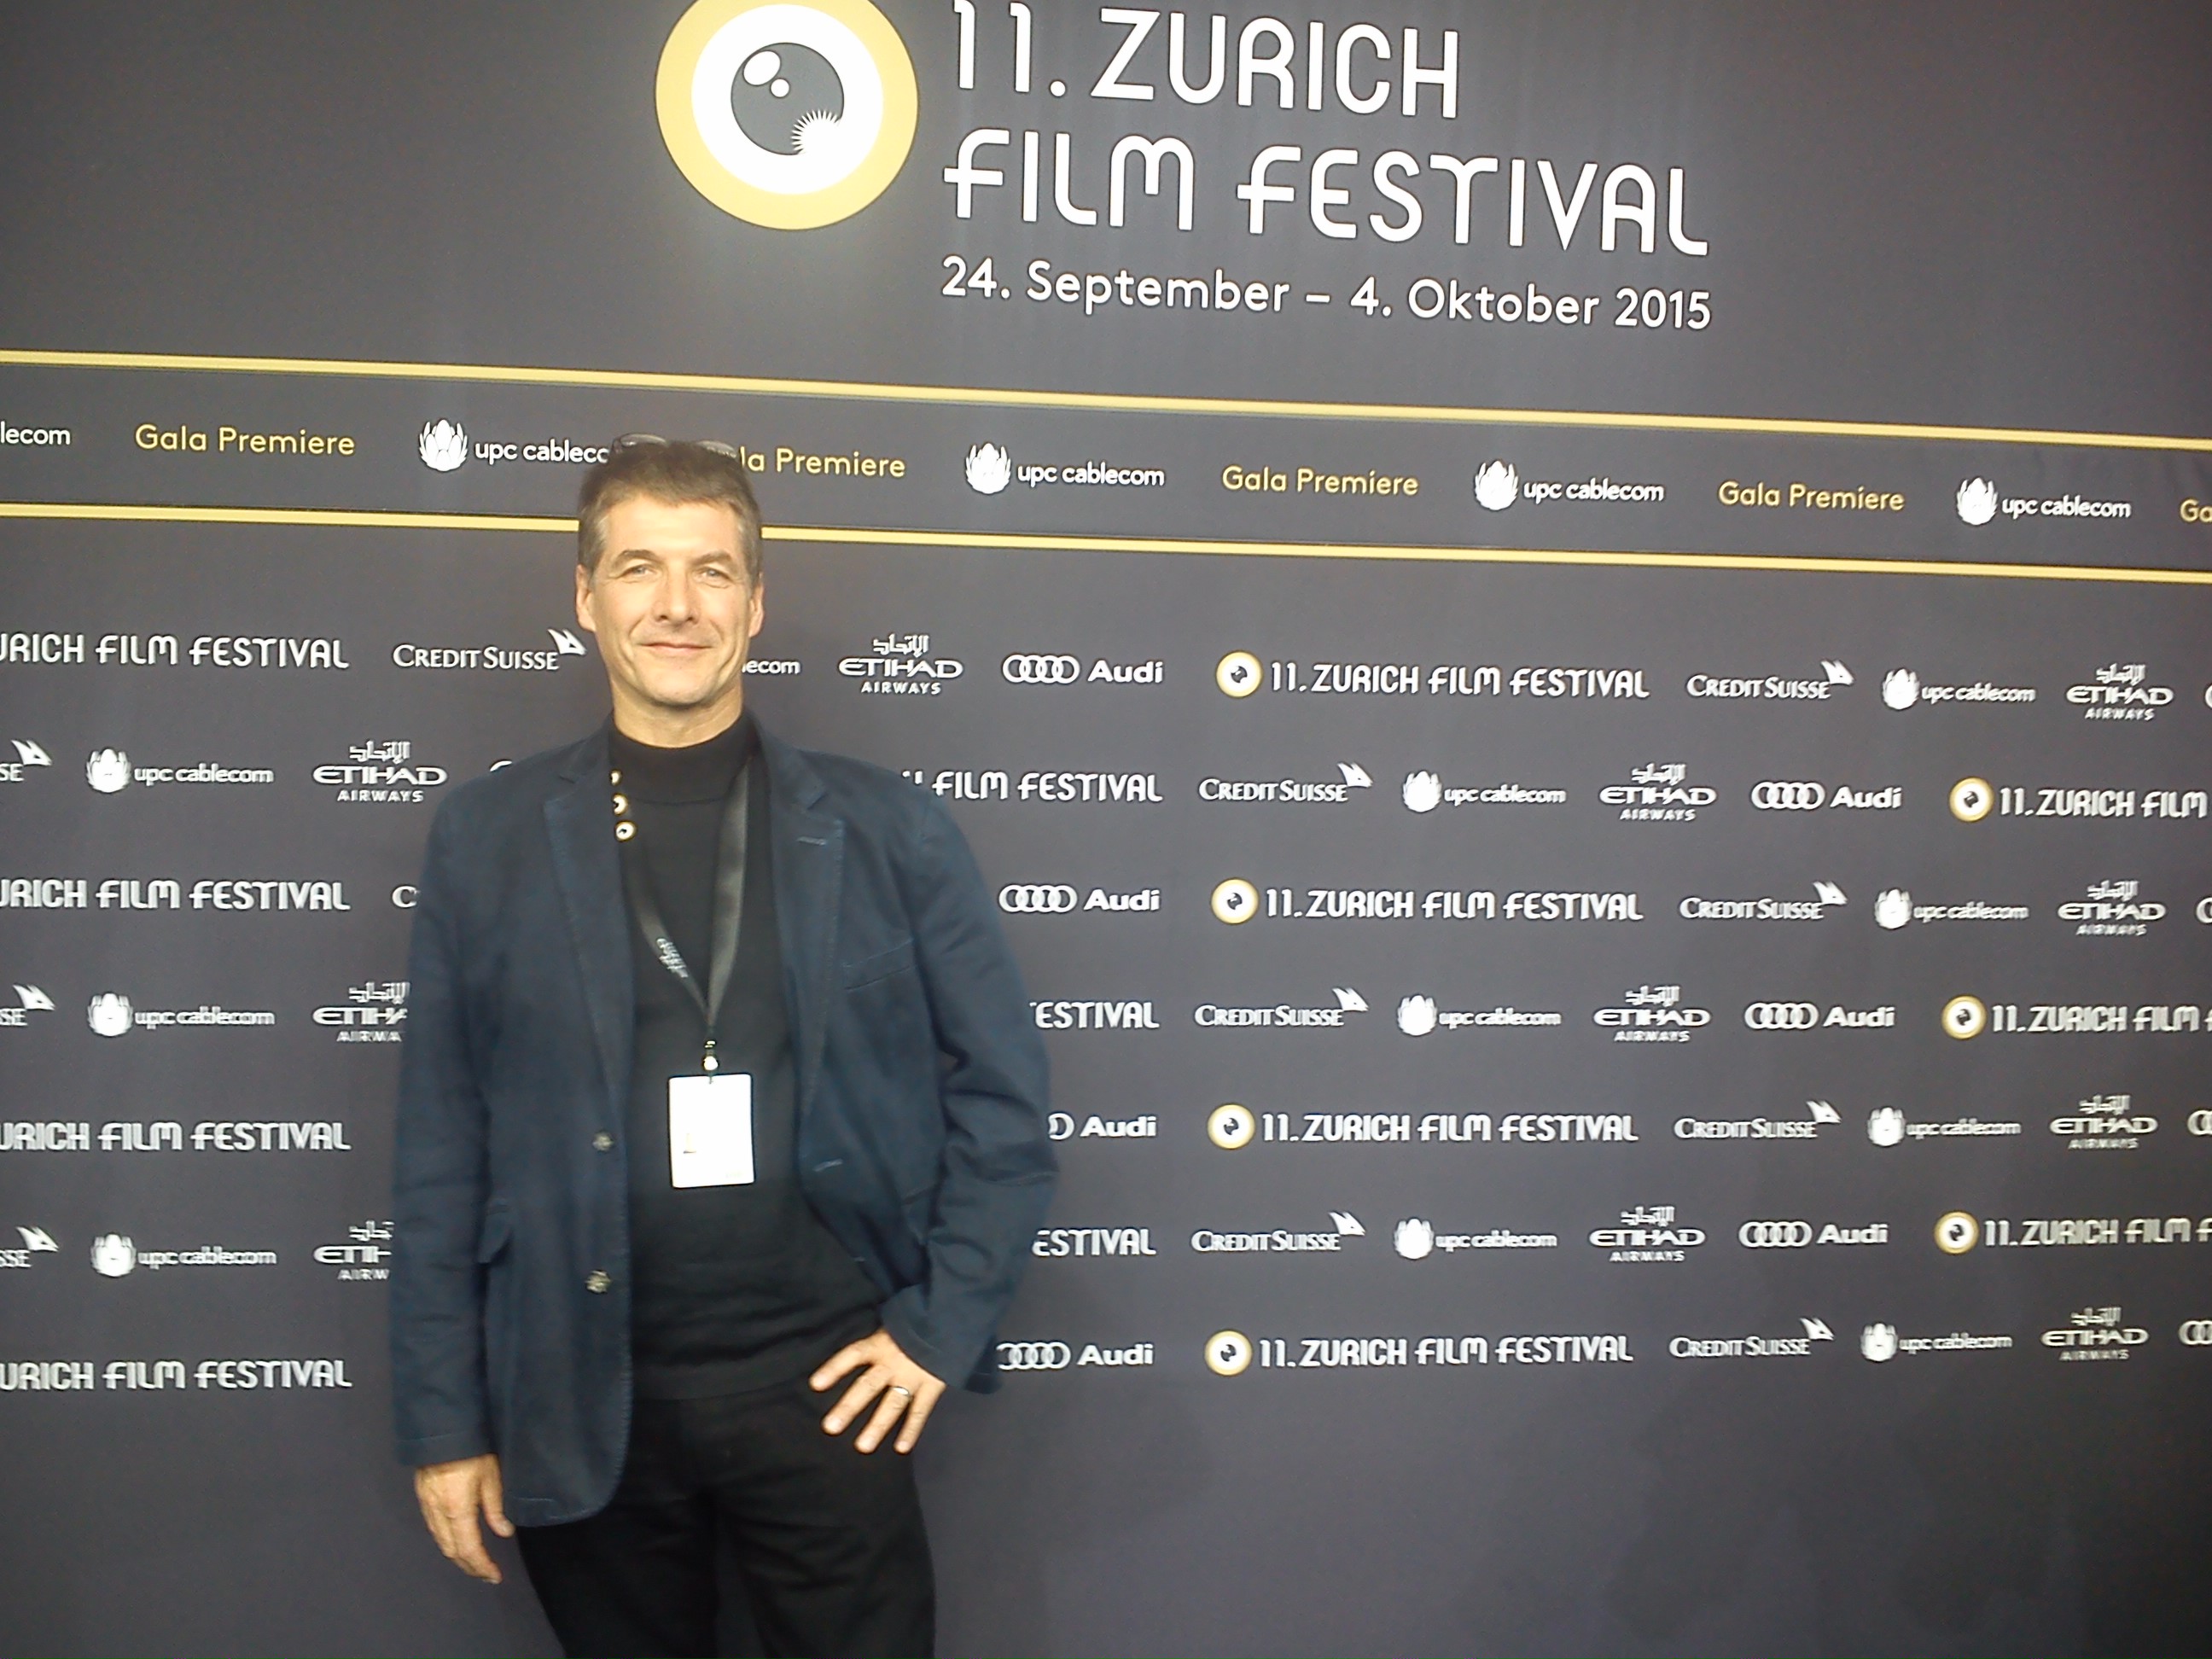 Zurich Film Festival 2015